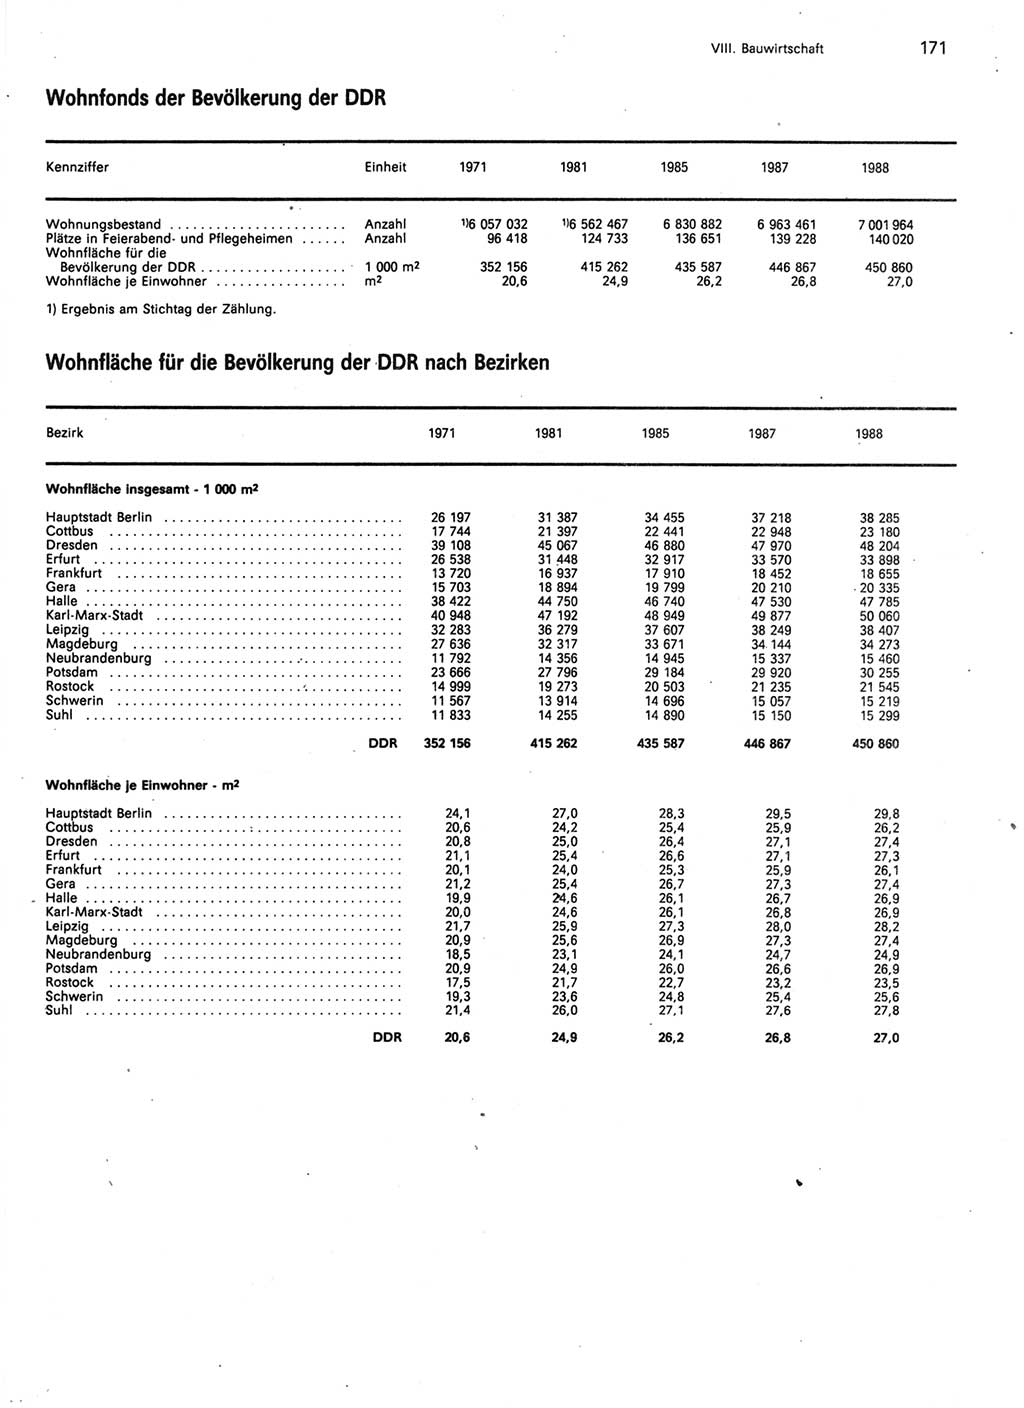 Statistisches Jahrbuch der Deutschen Demokratischen Republik (DDR) 1989, Seite 171 (Stat. Jb. DDR 1989, S. 171)